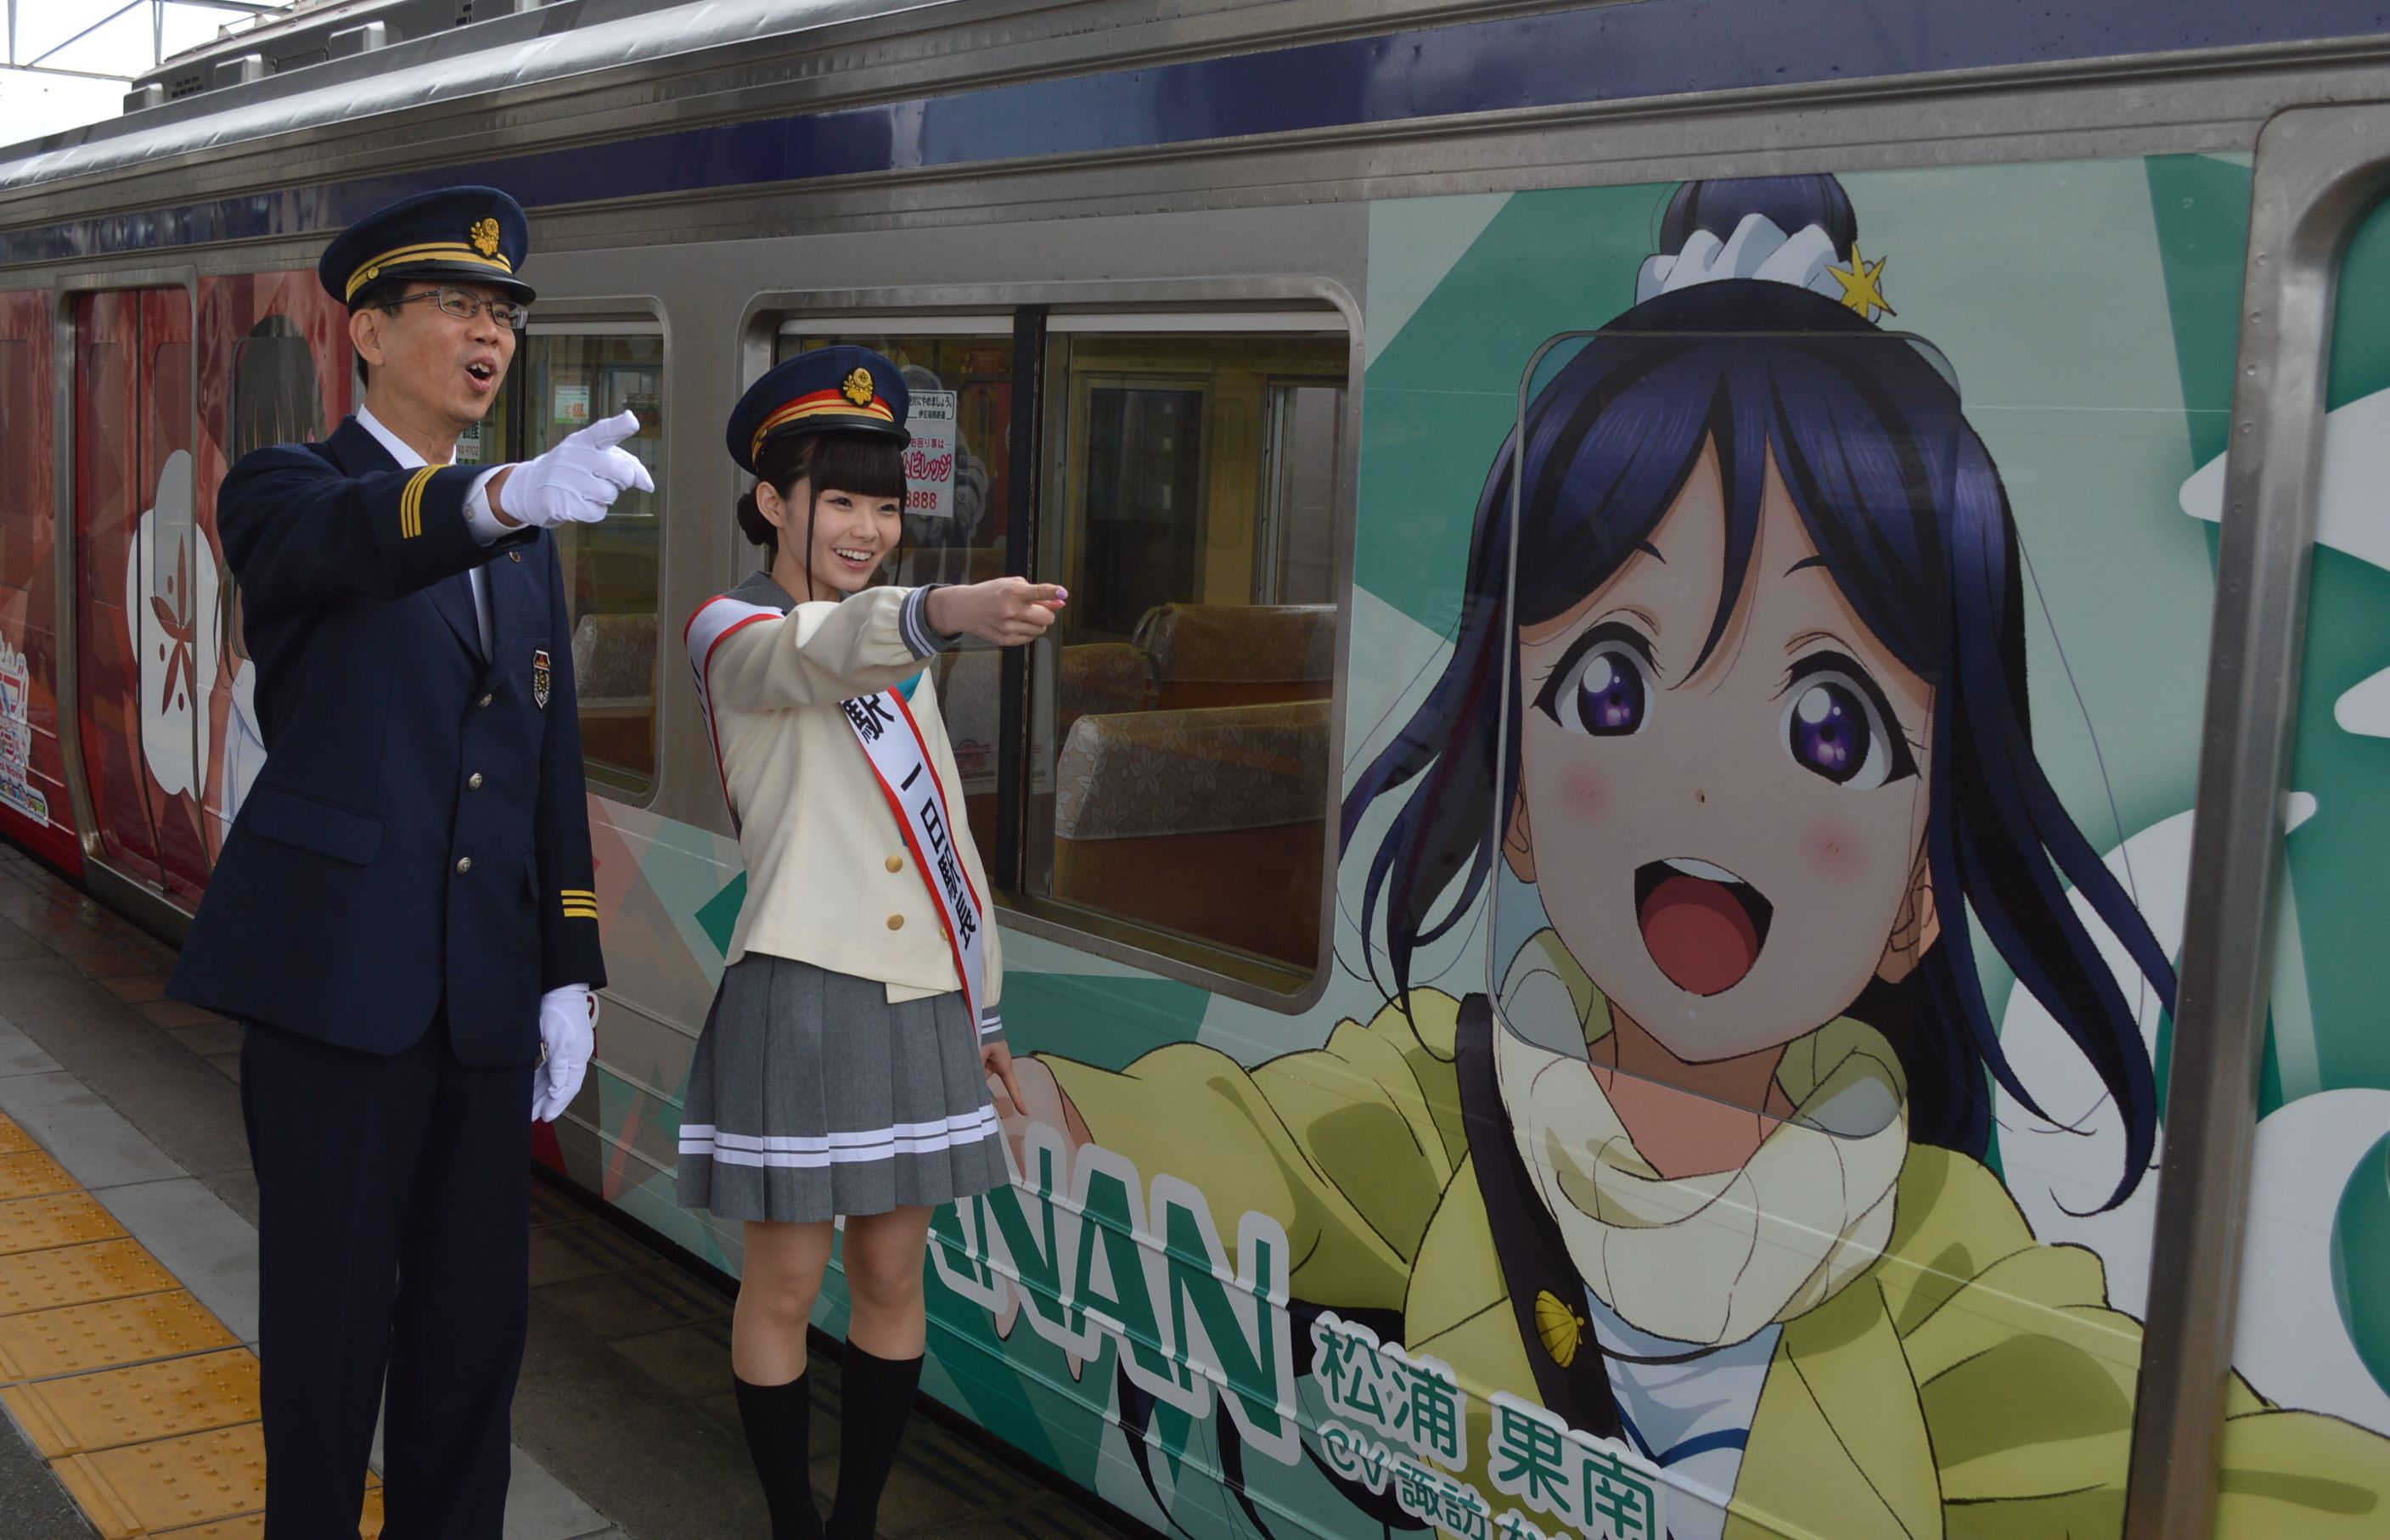 伍堂社長（左）とともに出発合図を出す諏訪さん＝伊豆箱根鉄道三島駅